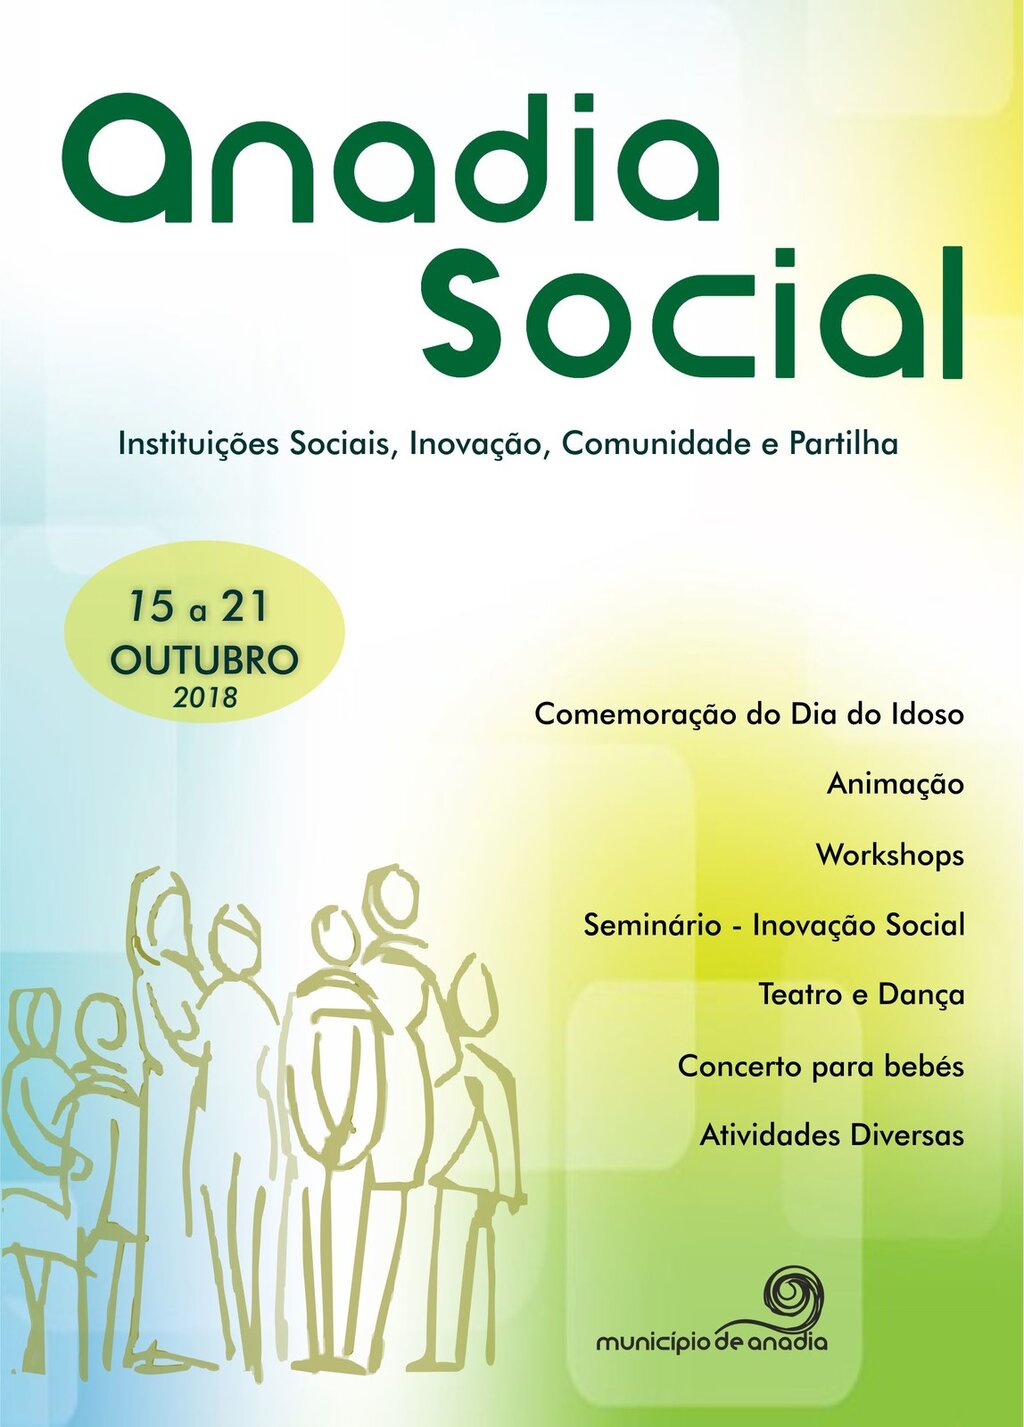 Brochura "Anadia Social"